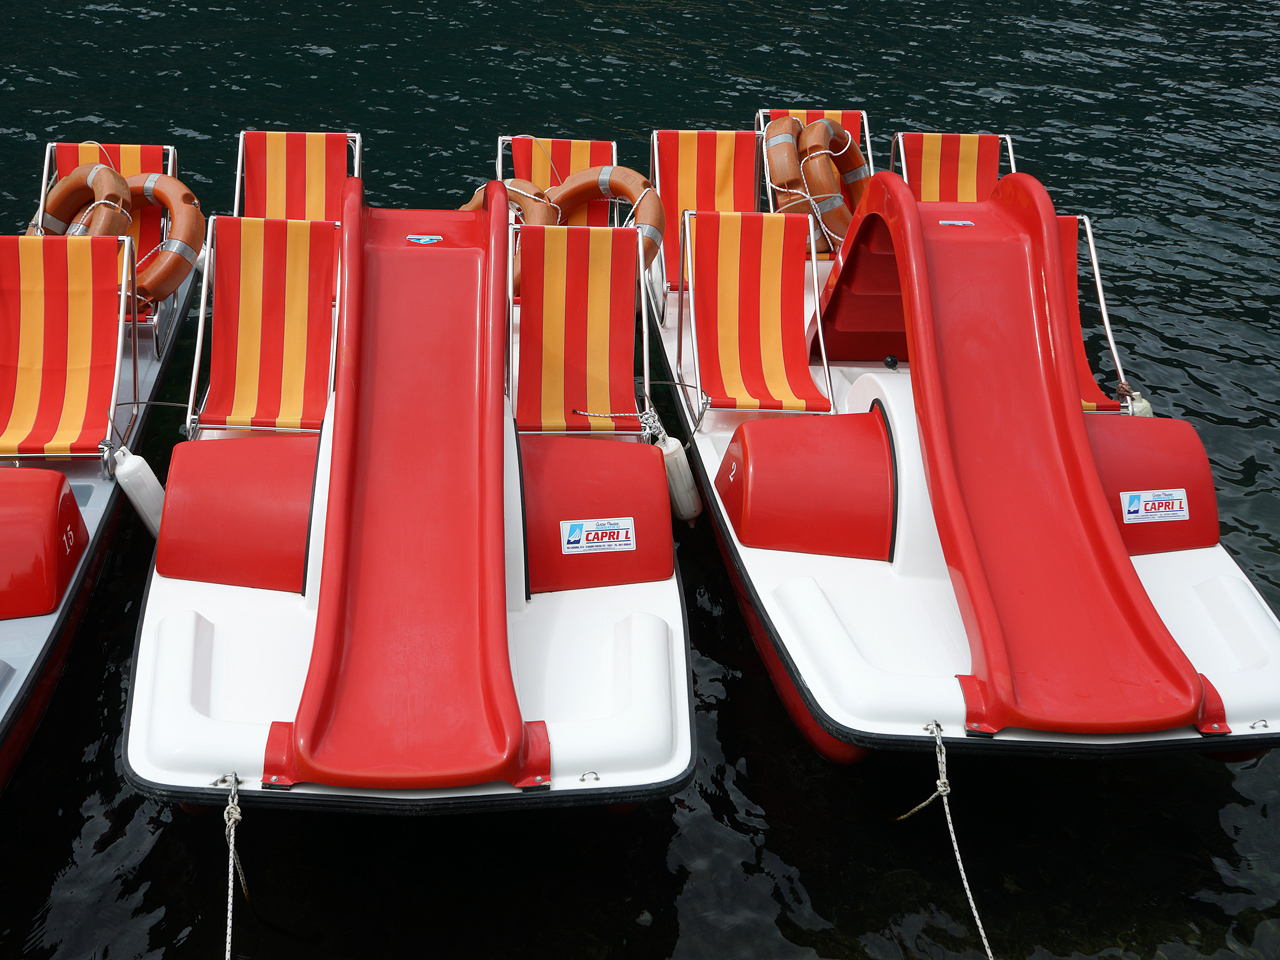 Tretboote - Warten auf Badegäste